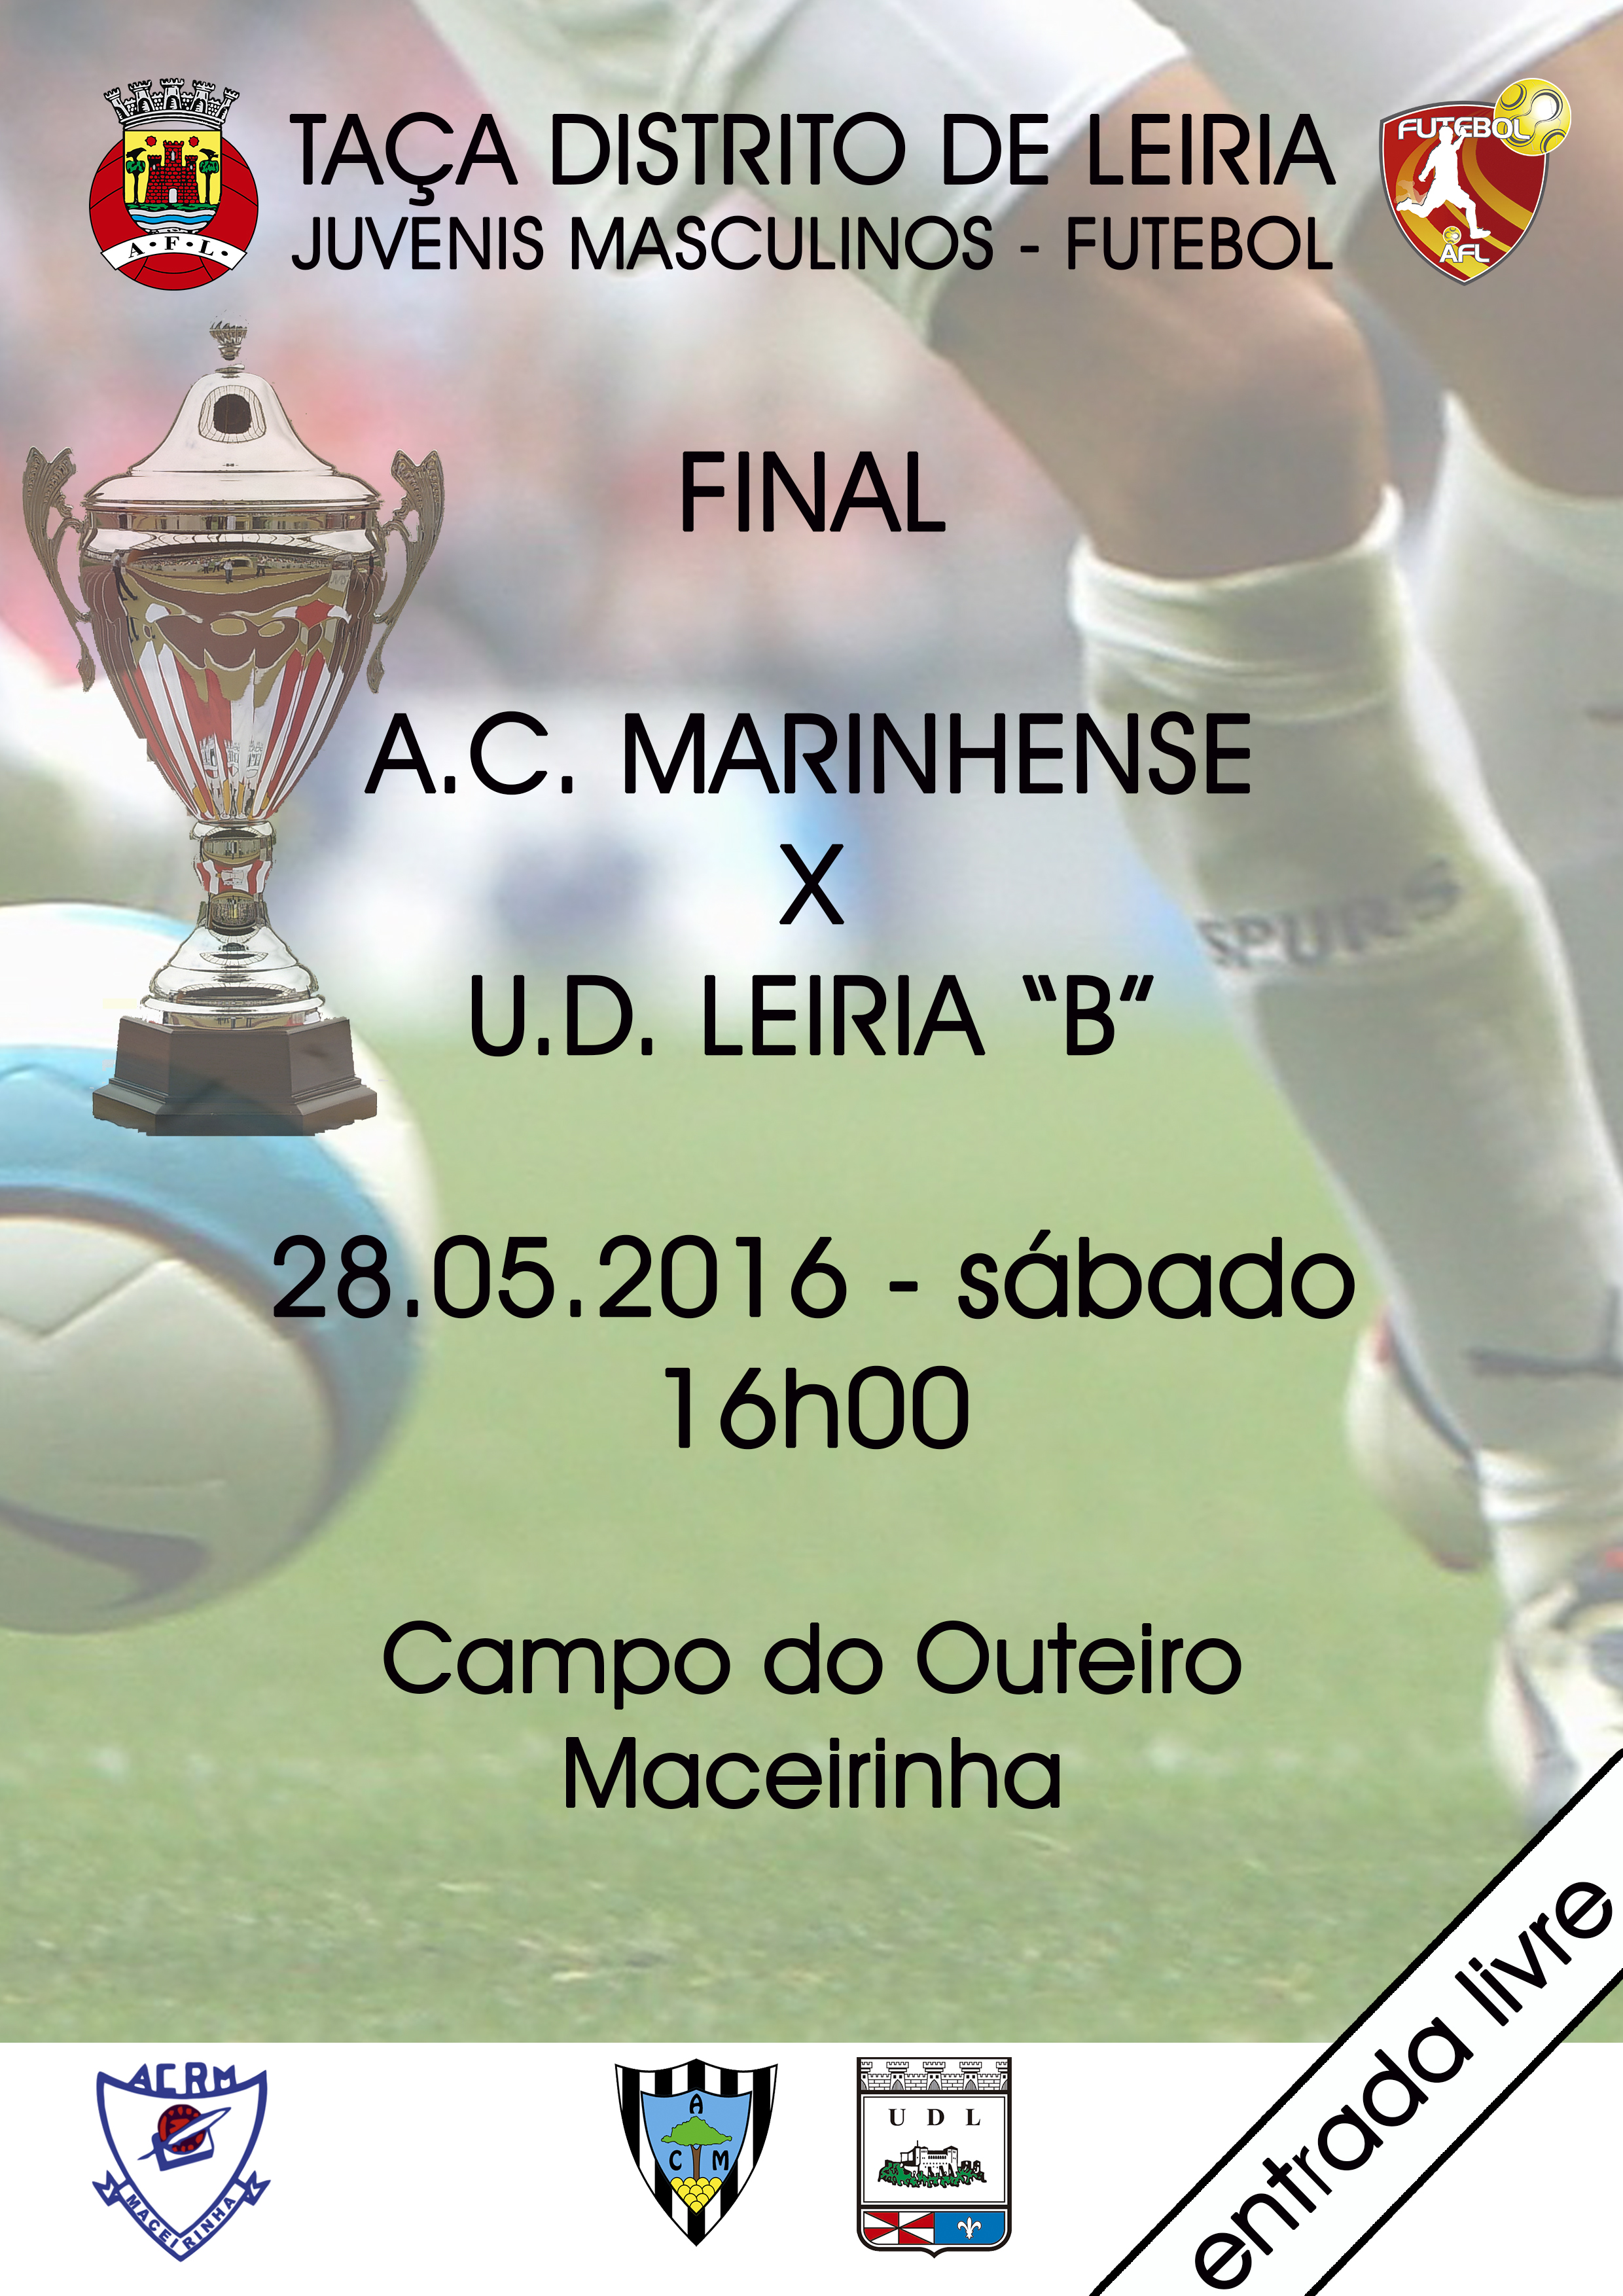 Final da Taça Distrito de Leiria - Juvenis Masculinos - Futebol